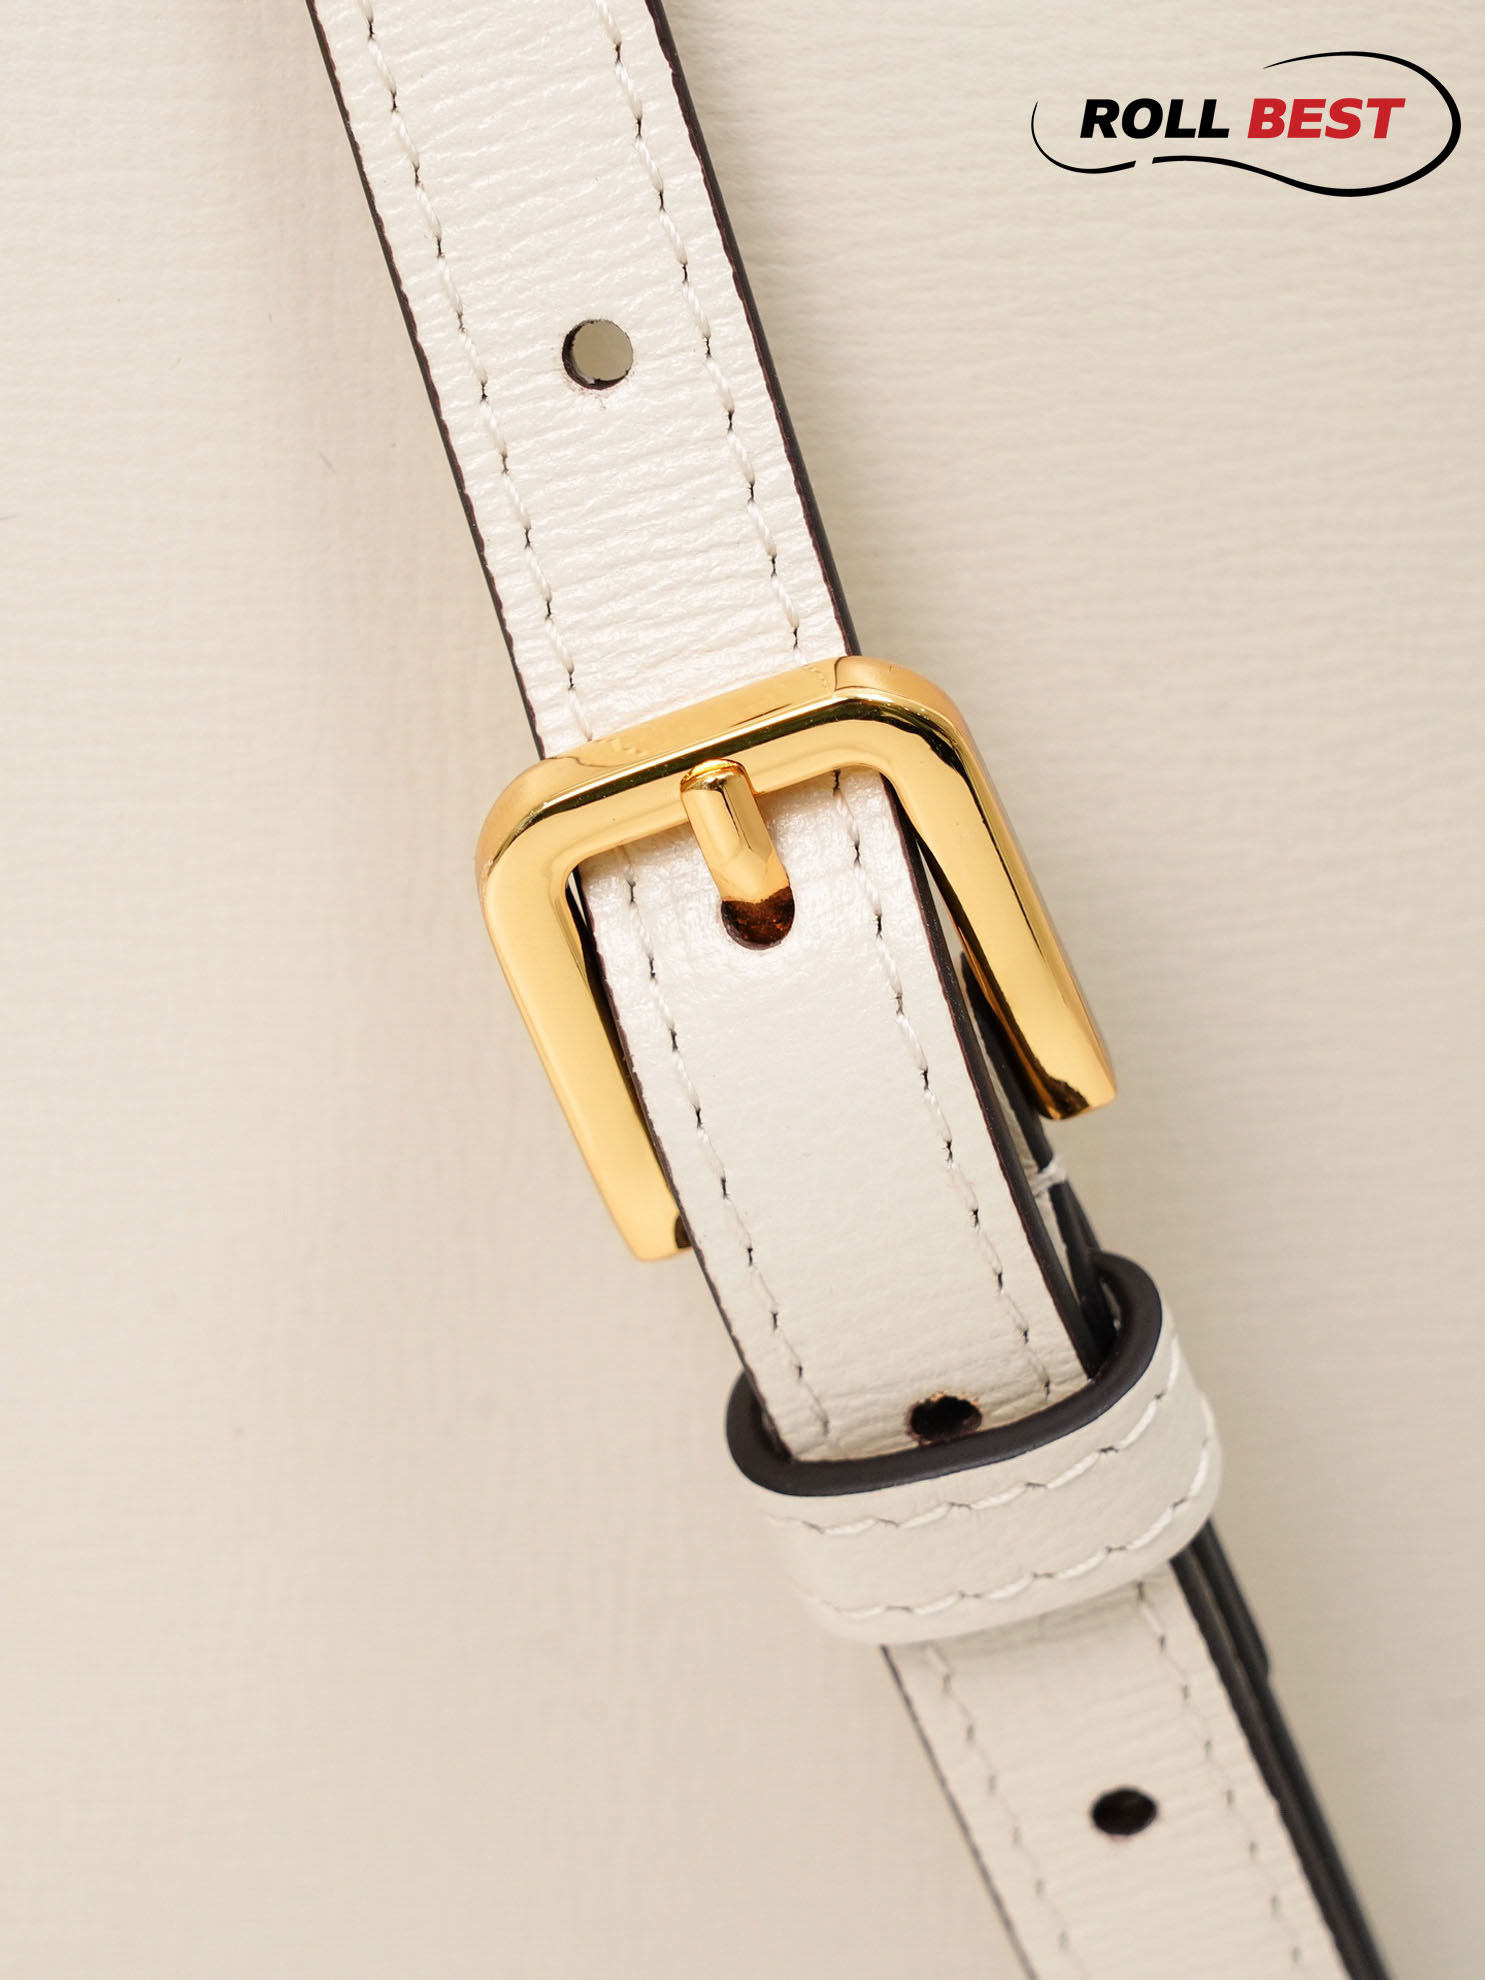 Túi Xách Gucci Horsebit 1955 Crossbody Bag Màu Trắng Xám